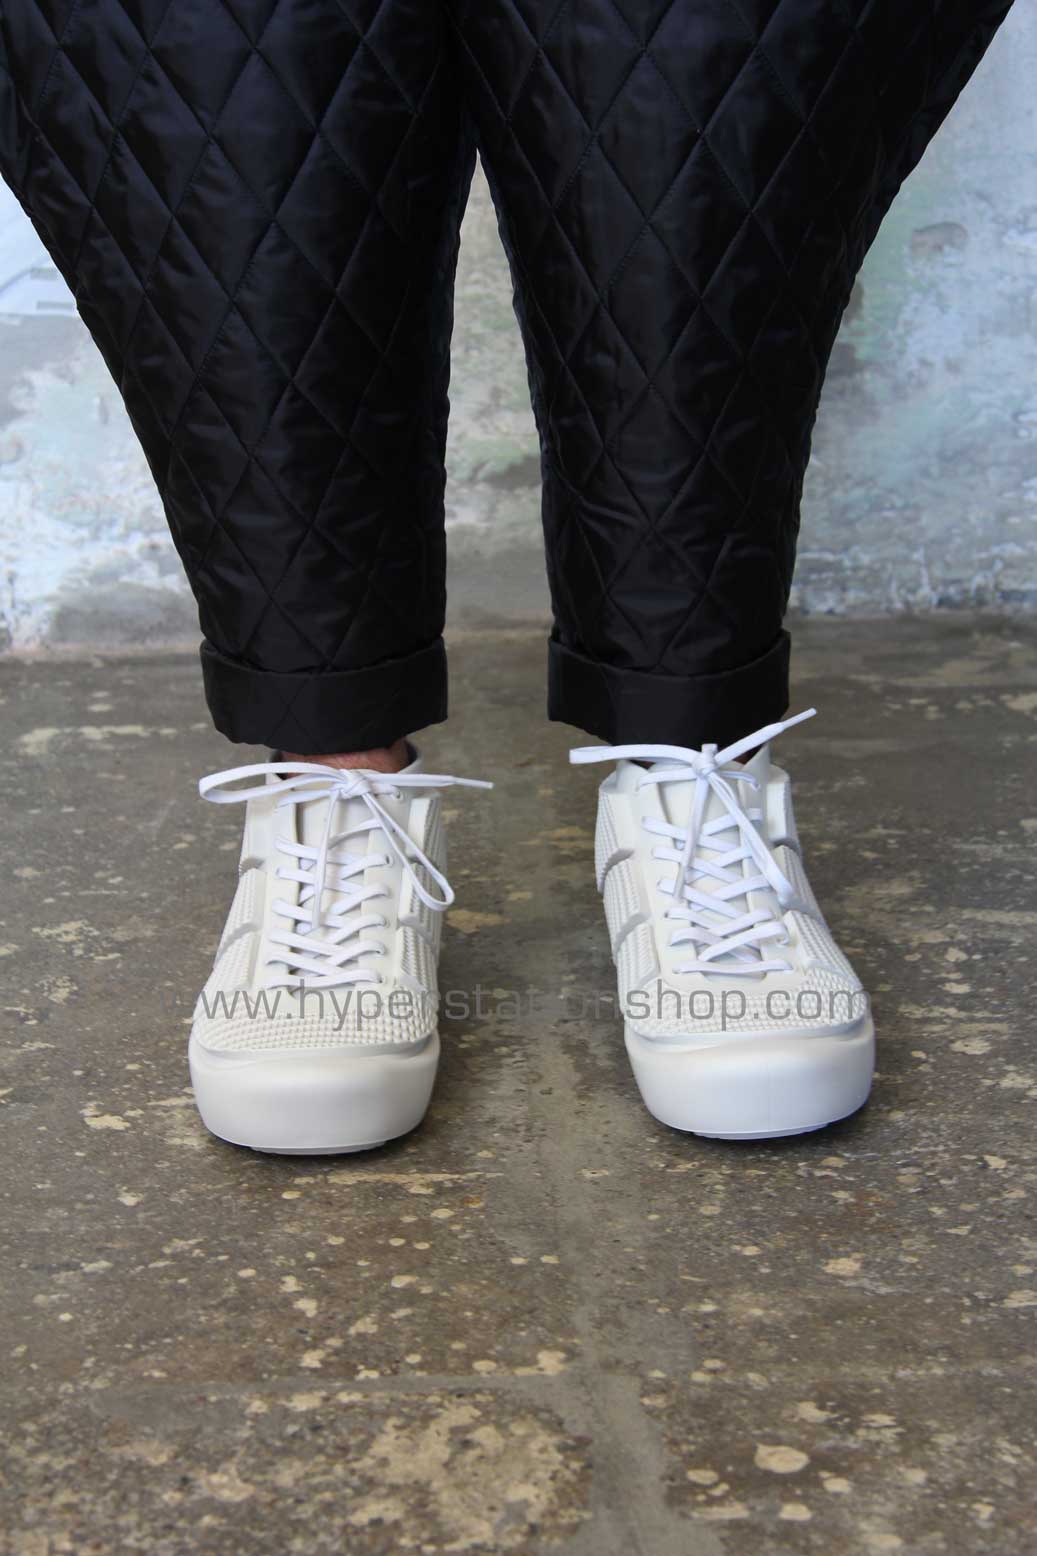 NagNagNag des Garçons x melissa – White sneakers | NagNagNag Shop